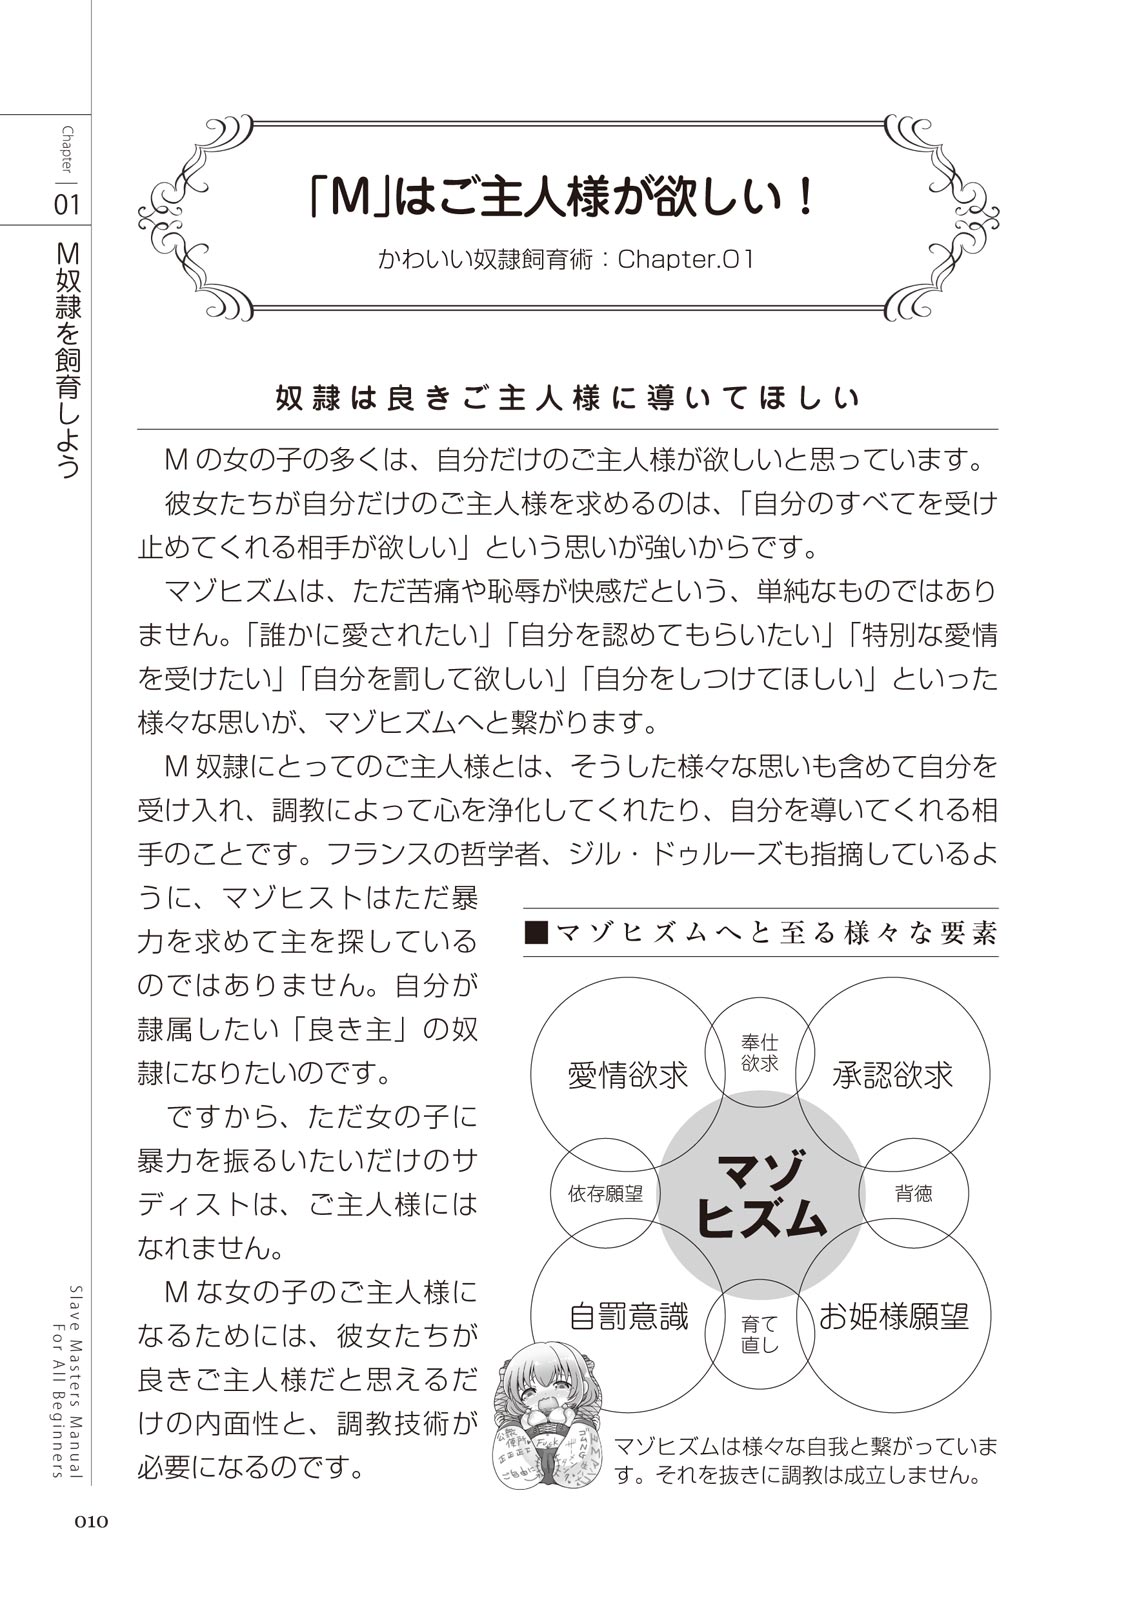 ゼロから始めるSMマニュアル かわいい奴隷飼育術 - Page 10 - HentaiRox